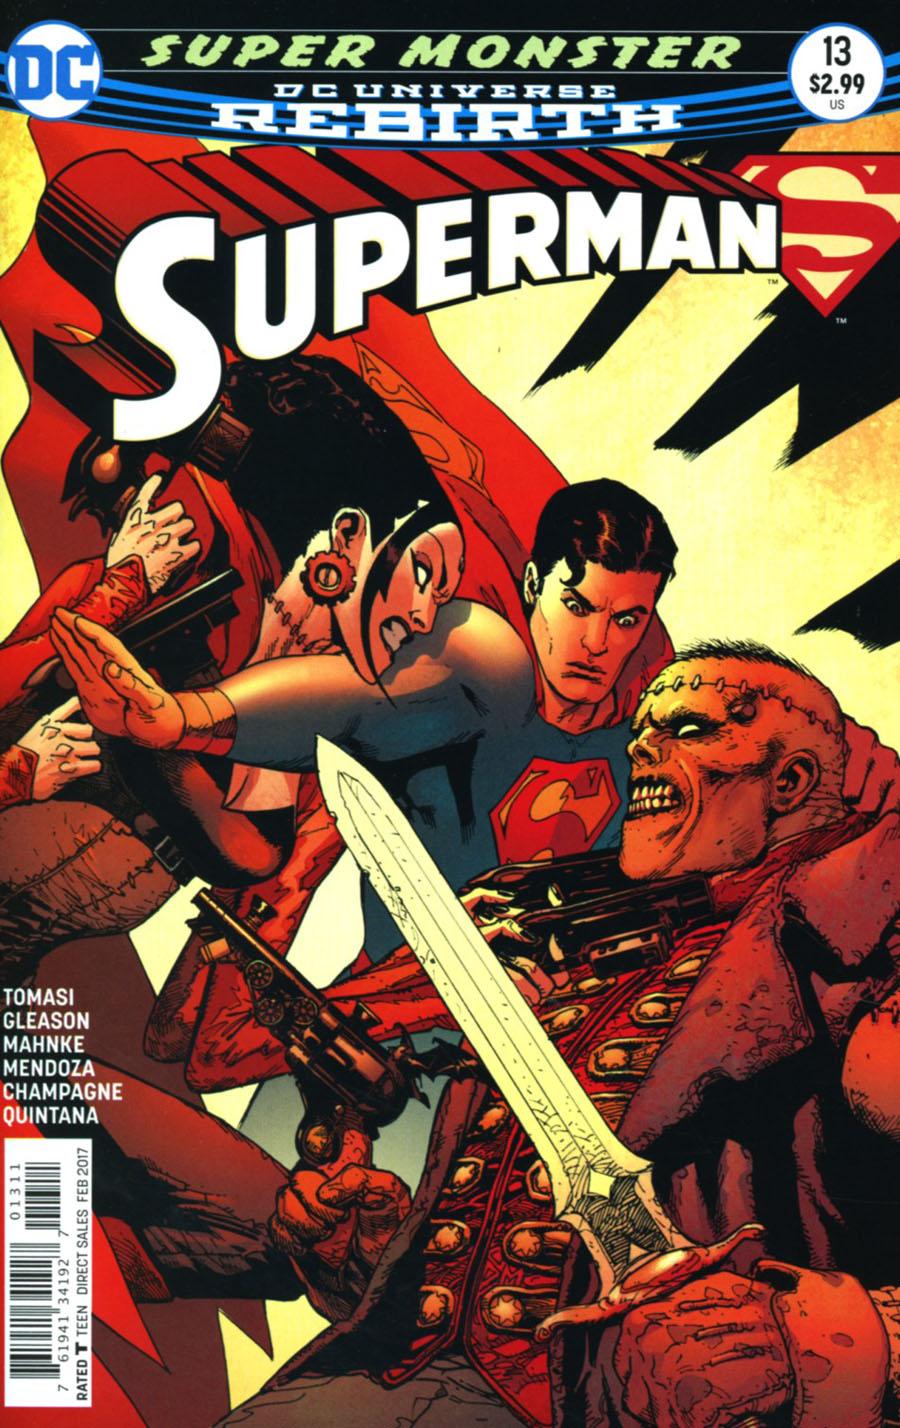 Superman Vol. 5 #13